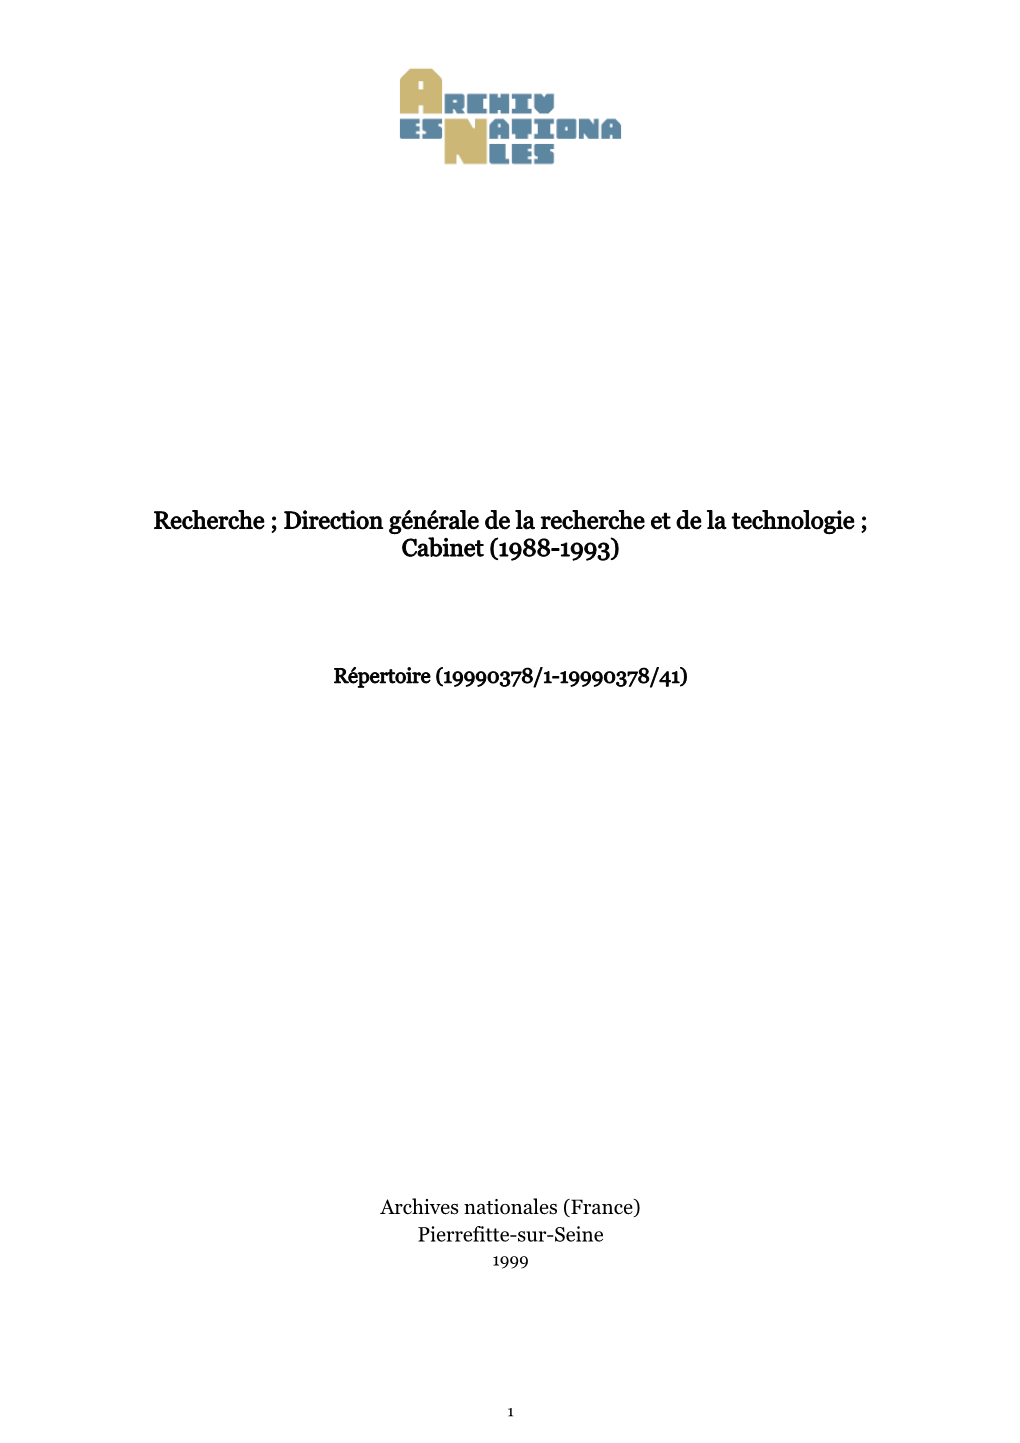 Recherche ; Direction Générale De La Recherche Et De La Technologie ; Cabinet (1988-1993)